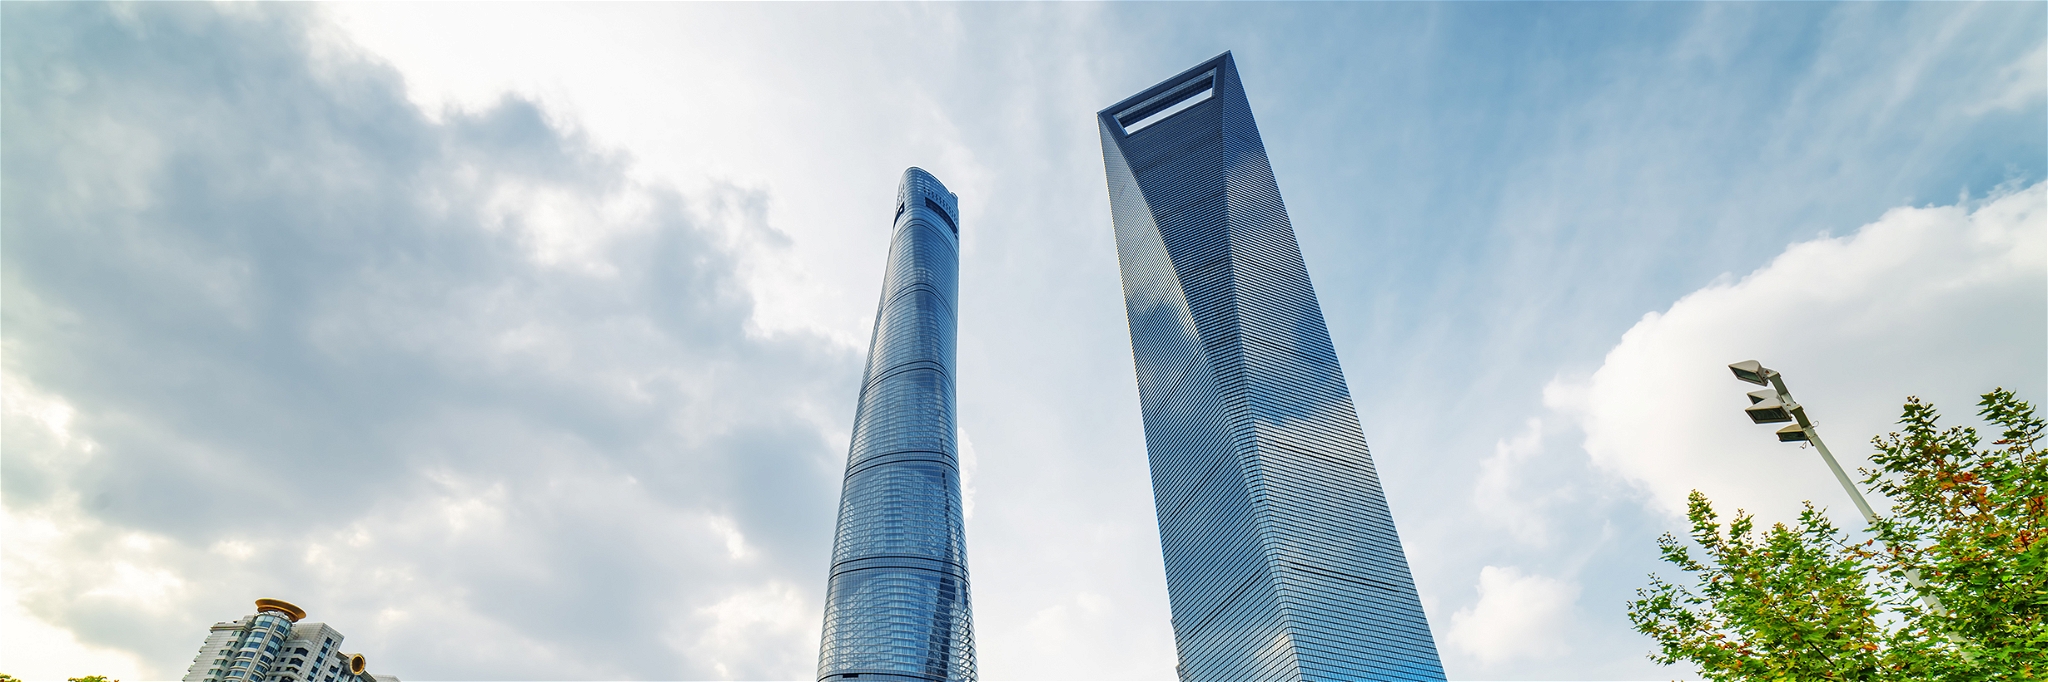 Der J Tower in Shanghai (links im Bild) beherbergt das höchste Restaurant der Welt.